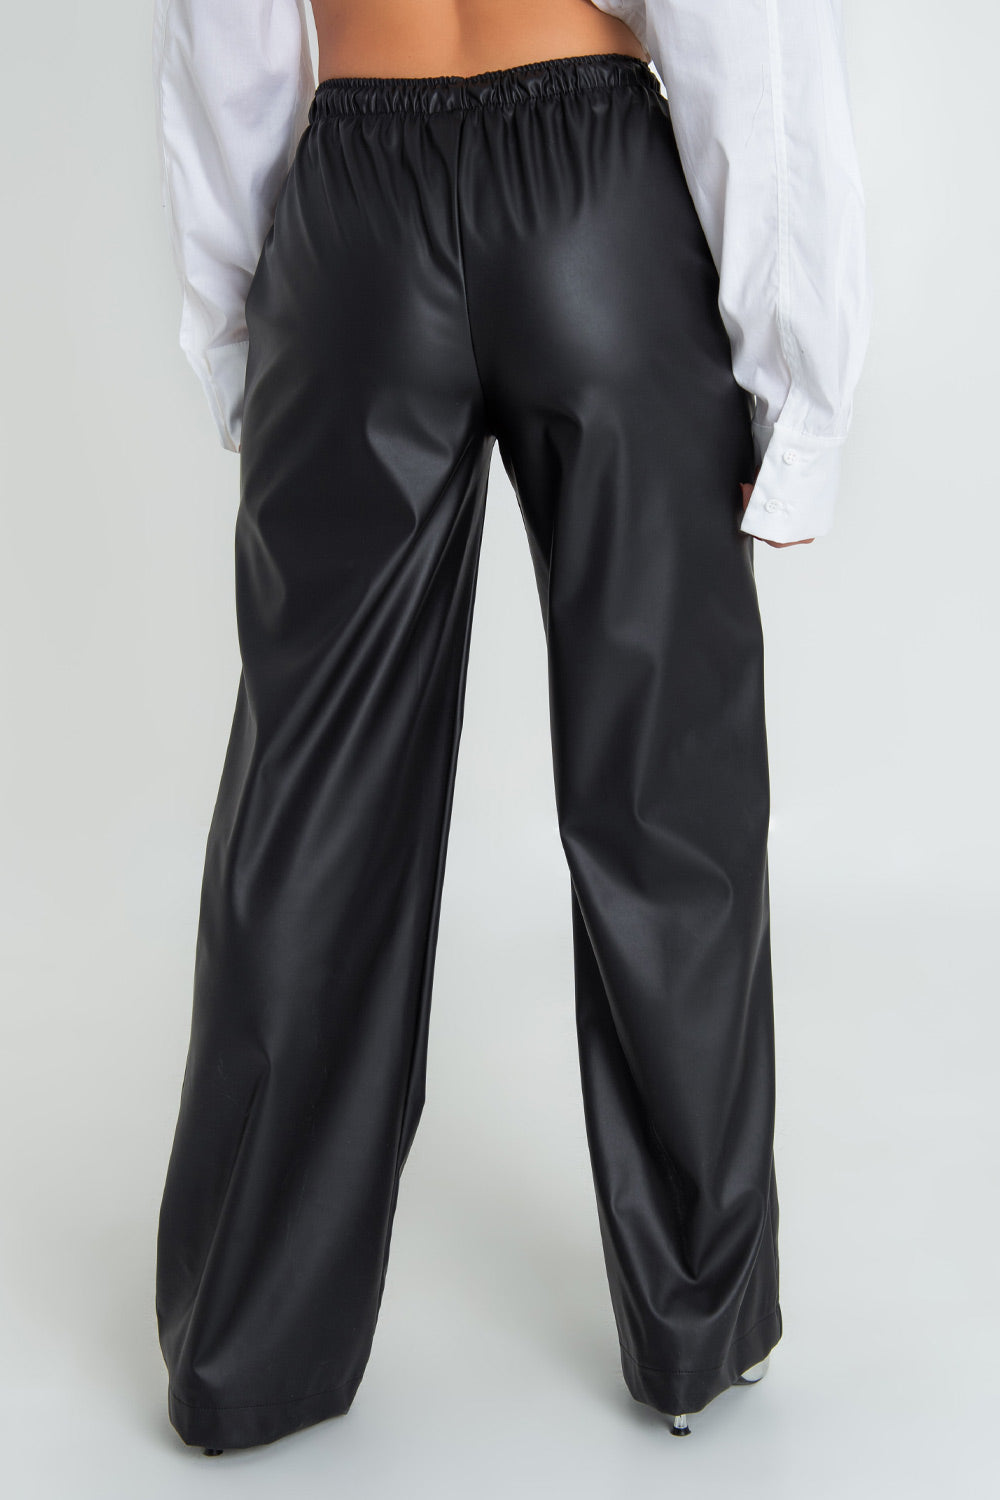 Pantalón de fit recto, efecto piel, bolsillos delanteros, cintura alta con pretina elástica y jareta frontal ajustable.